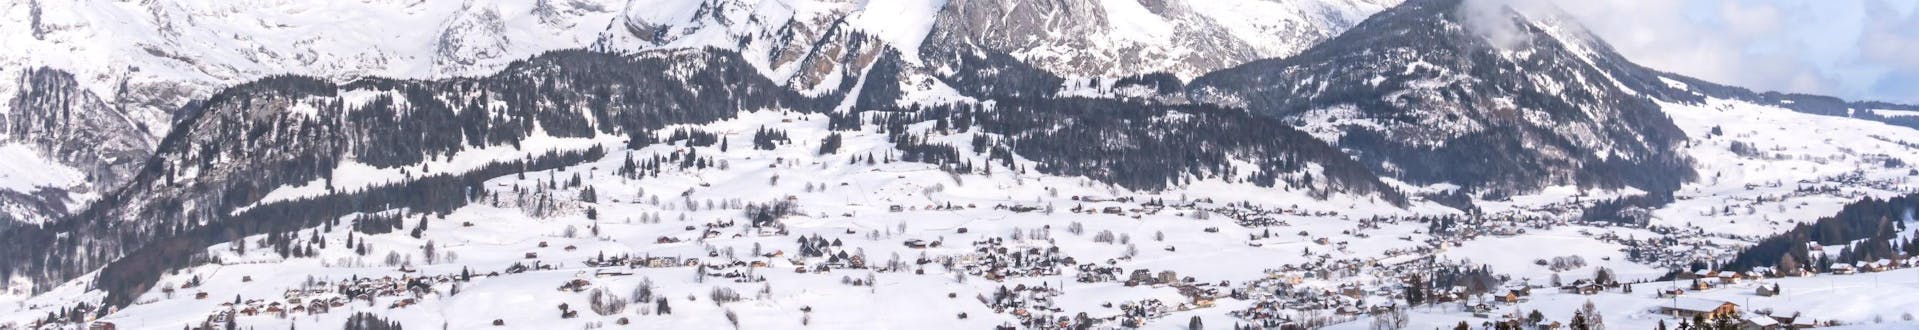 Une photo d'un paysage hivernal enneigé dans la région suisse de Toggenburg où les visiteurs peuvent réserver des cours de ski avec les écoles de ski locales.